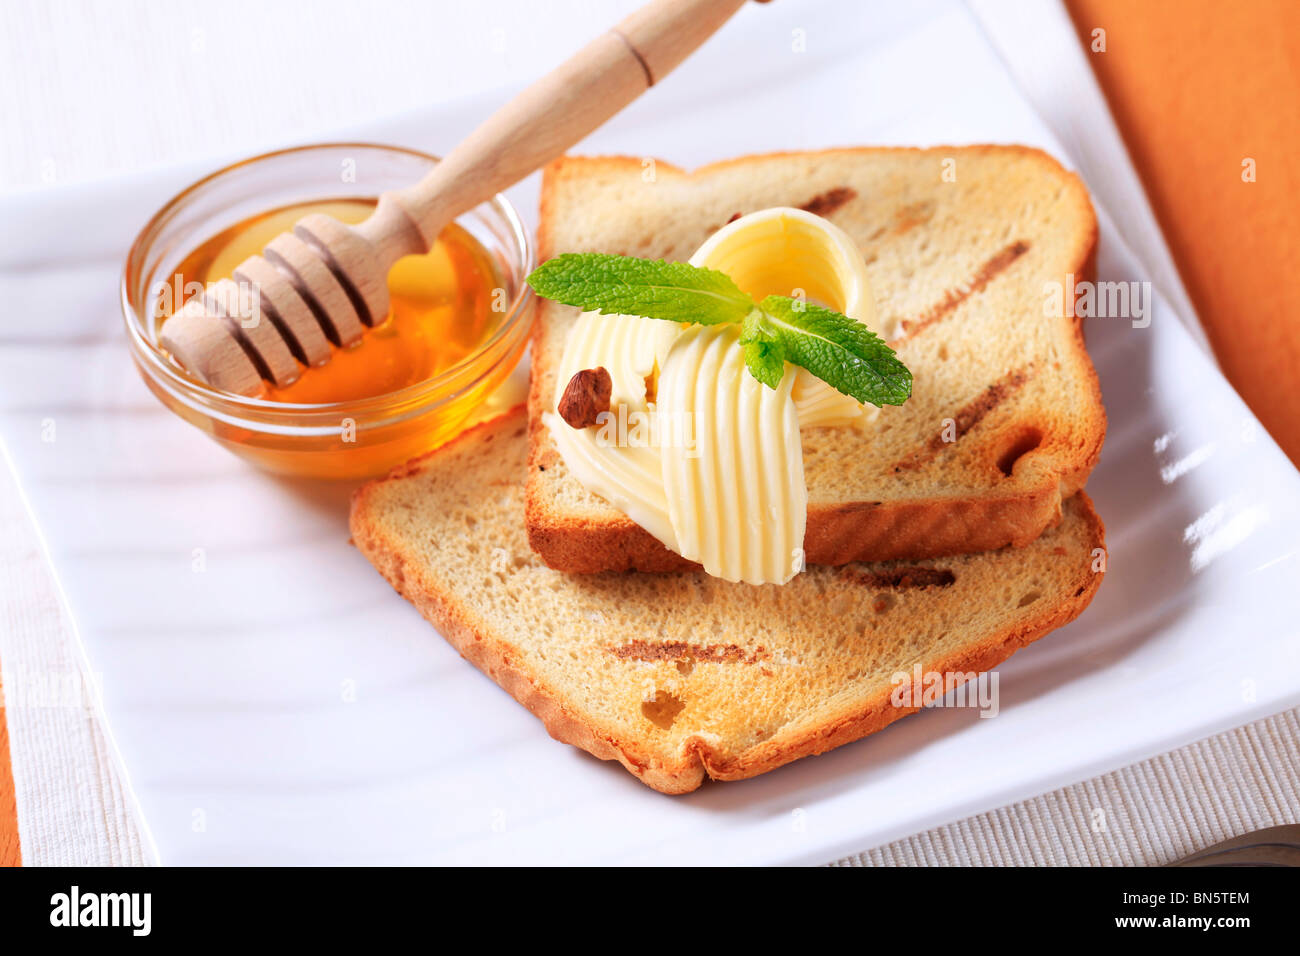 La prima colazione - Fette biscottate, burro e miele Foto stock - Alamy